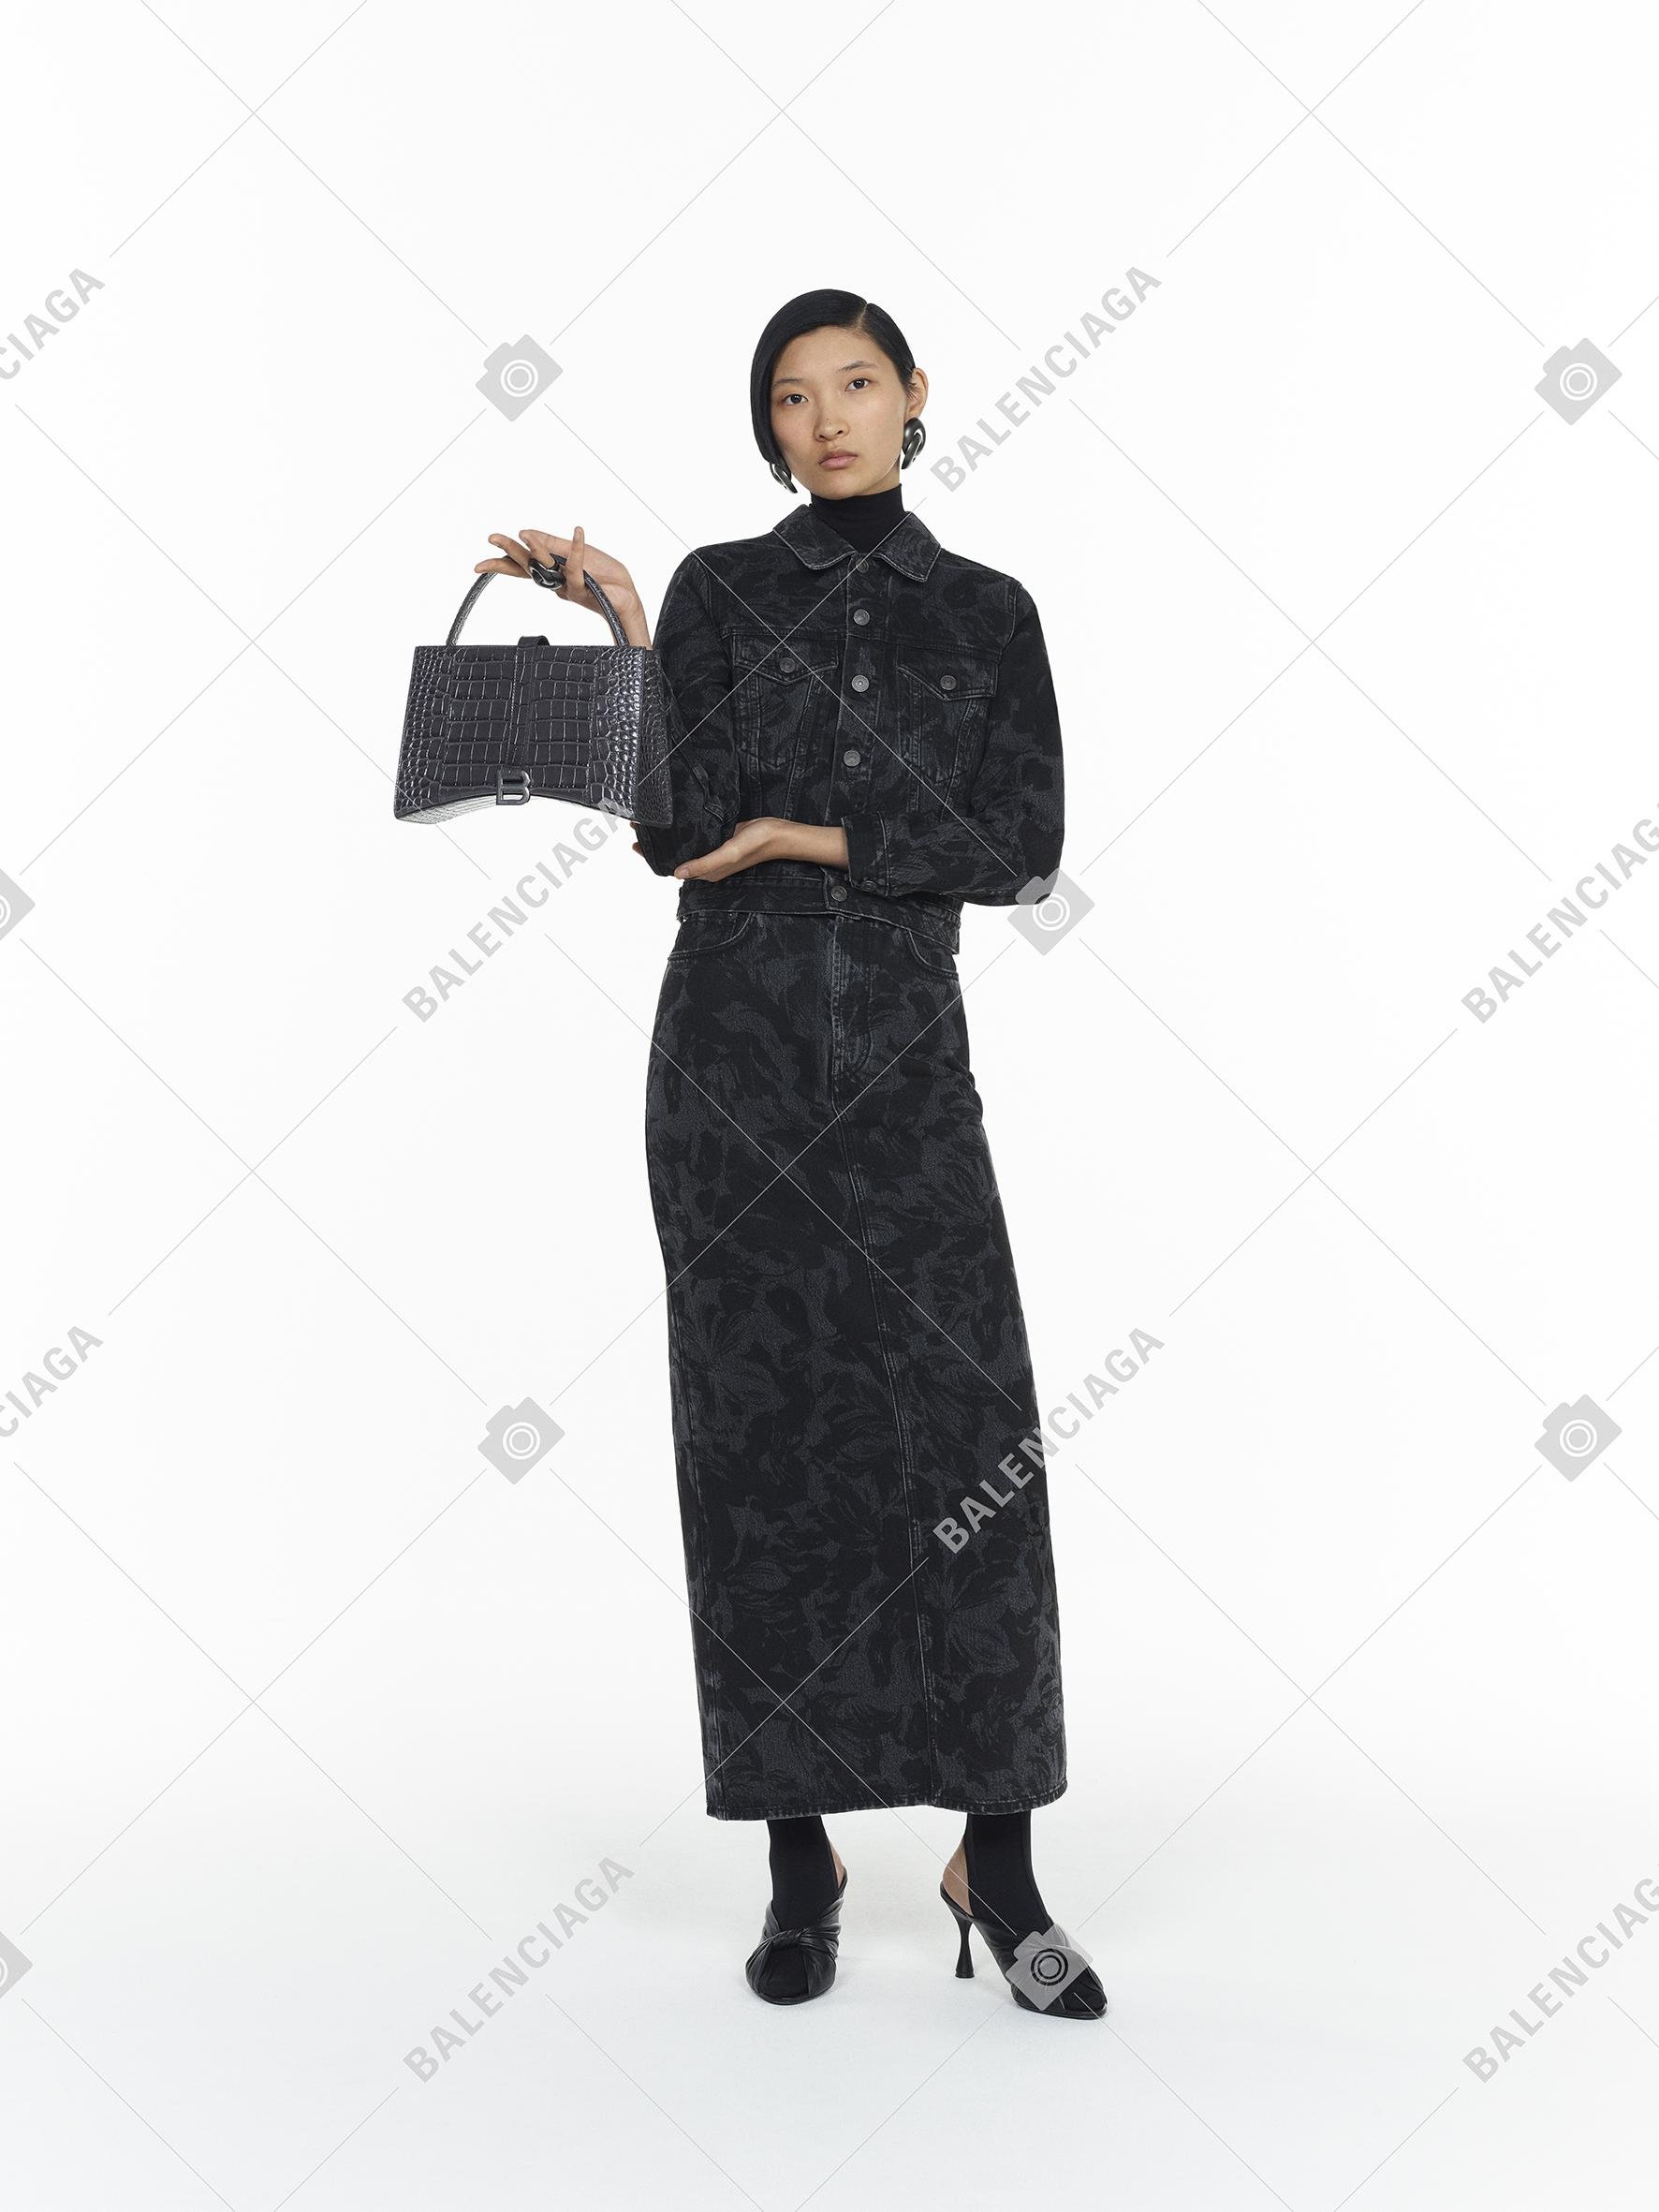 مجموعة بالنسياغا التحضيرية لخريف 2020 ملابس نسائية أزياء نسائية أحذية نسائية سروال توب بلوزة فستان بوتس